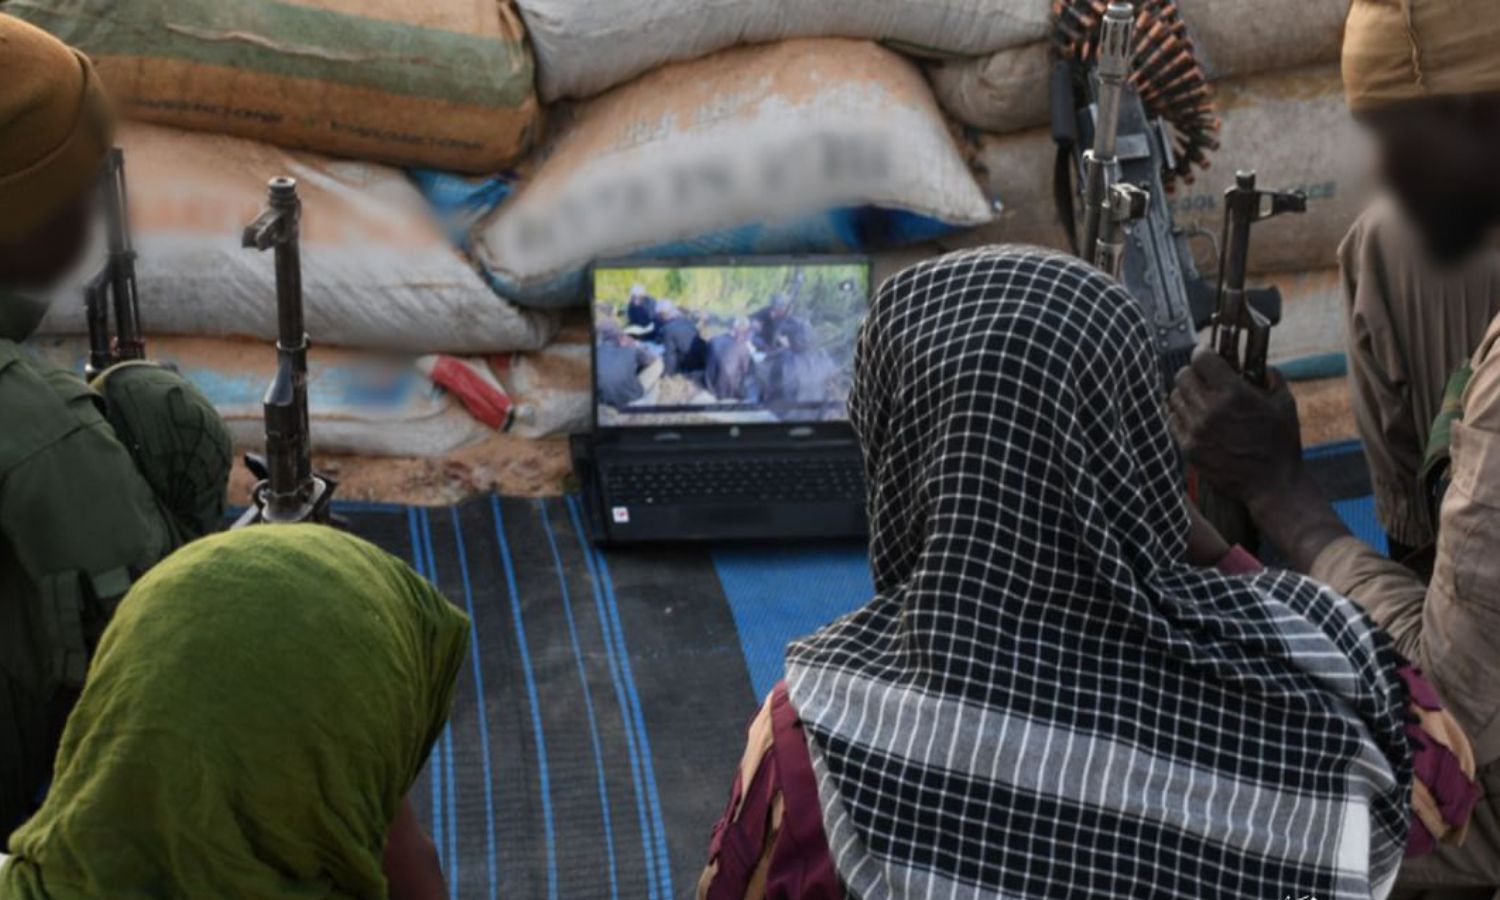 مقاتلون في تنظيم "الدولة الإسلامية" يشاهدون إصدارًا للتنظيم بعنوان "حياة الجهاد" (معرف غرب إفريقيا التابع للتنظيم)